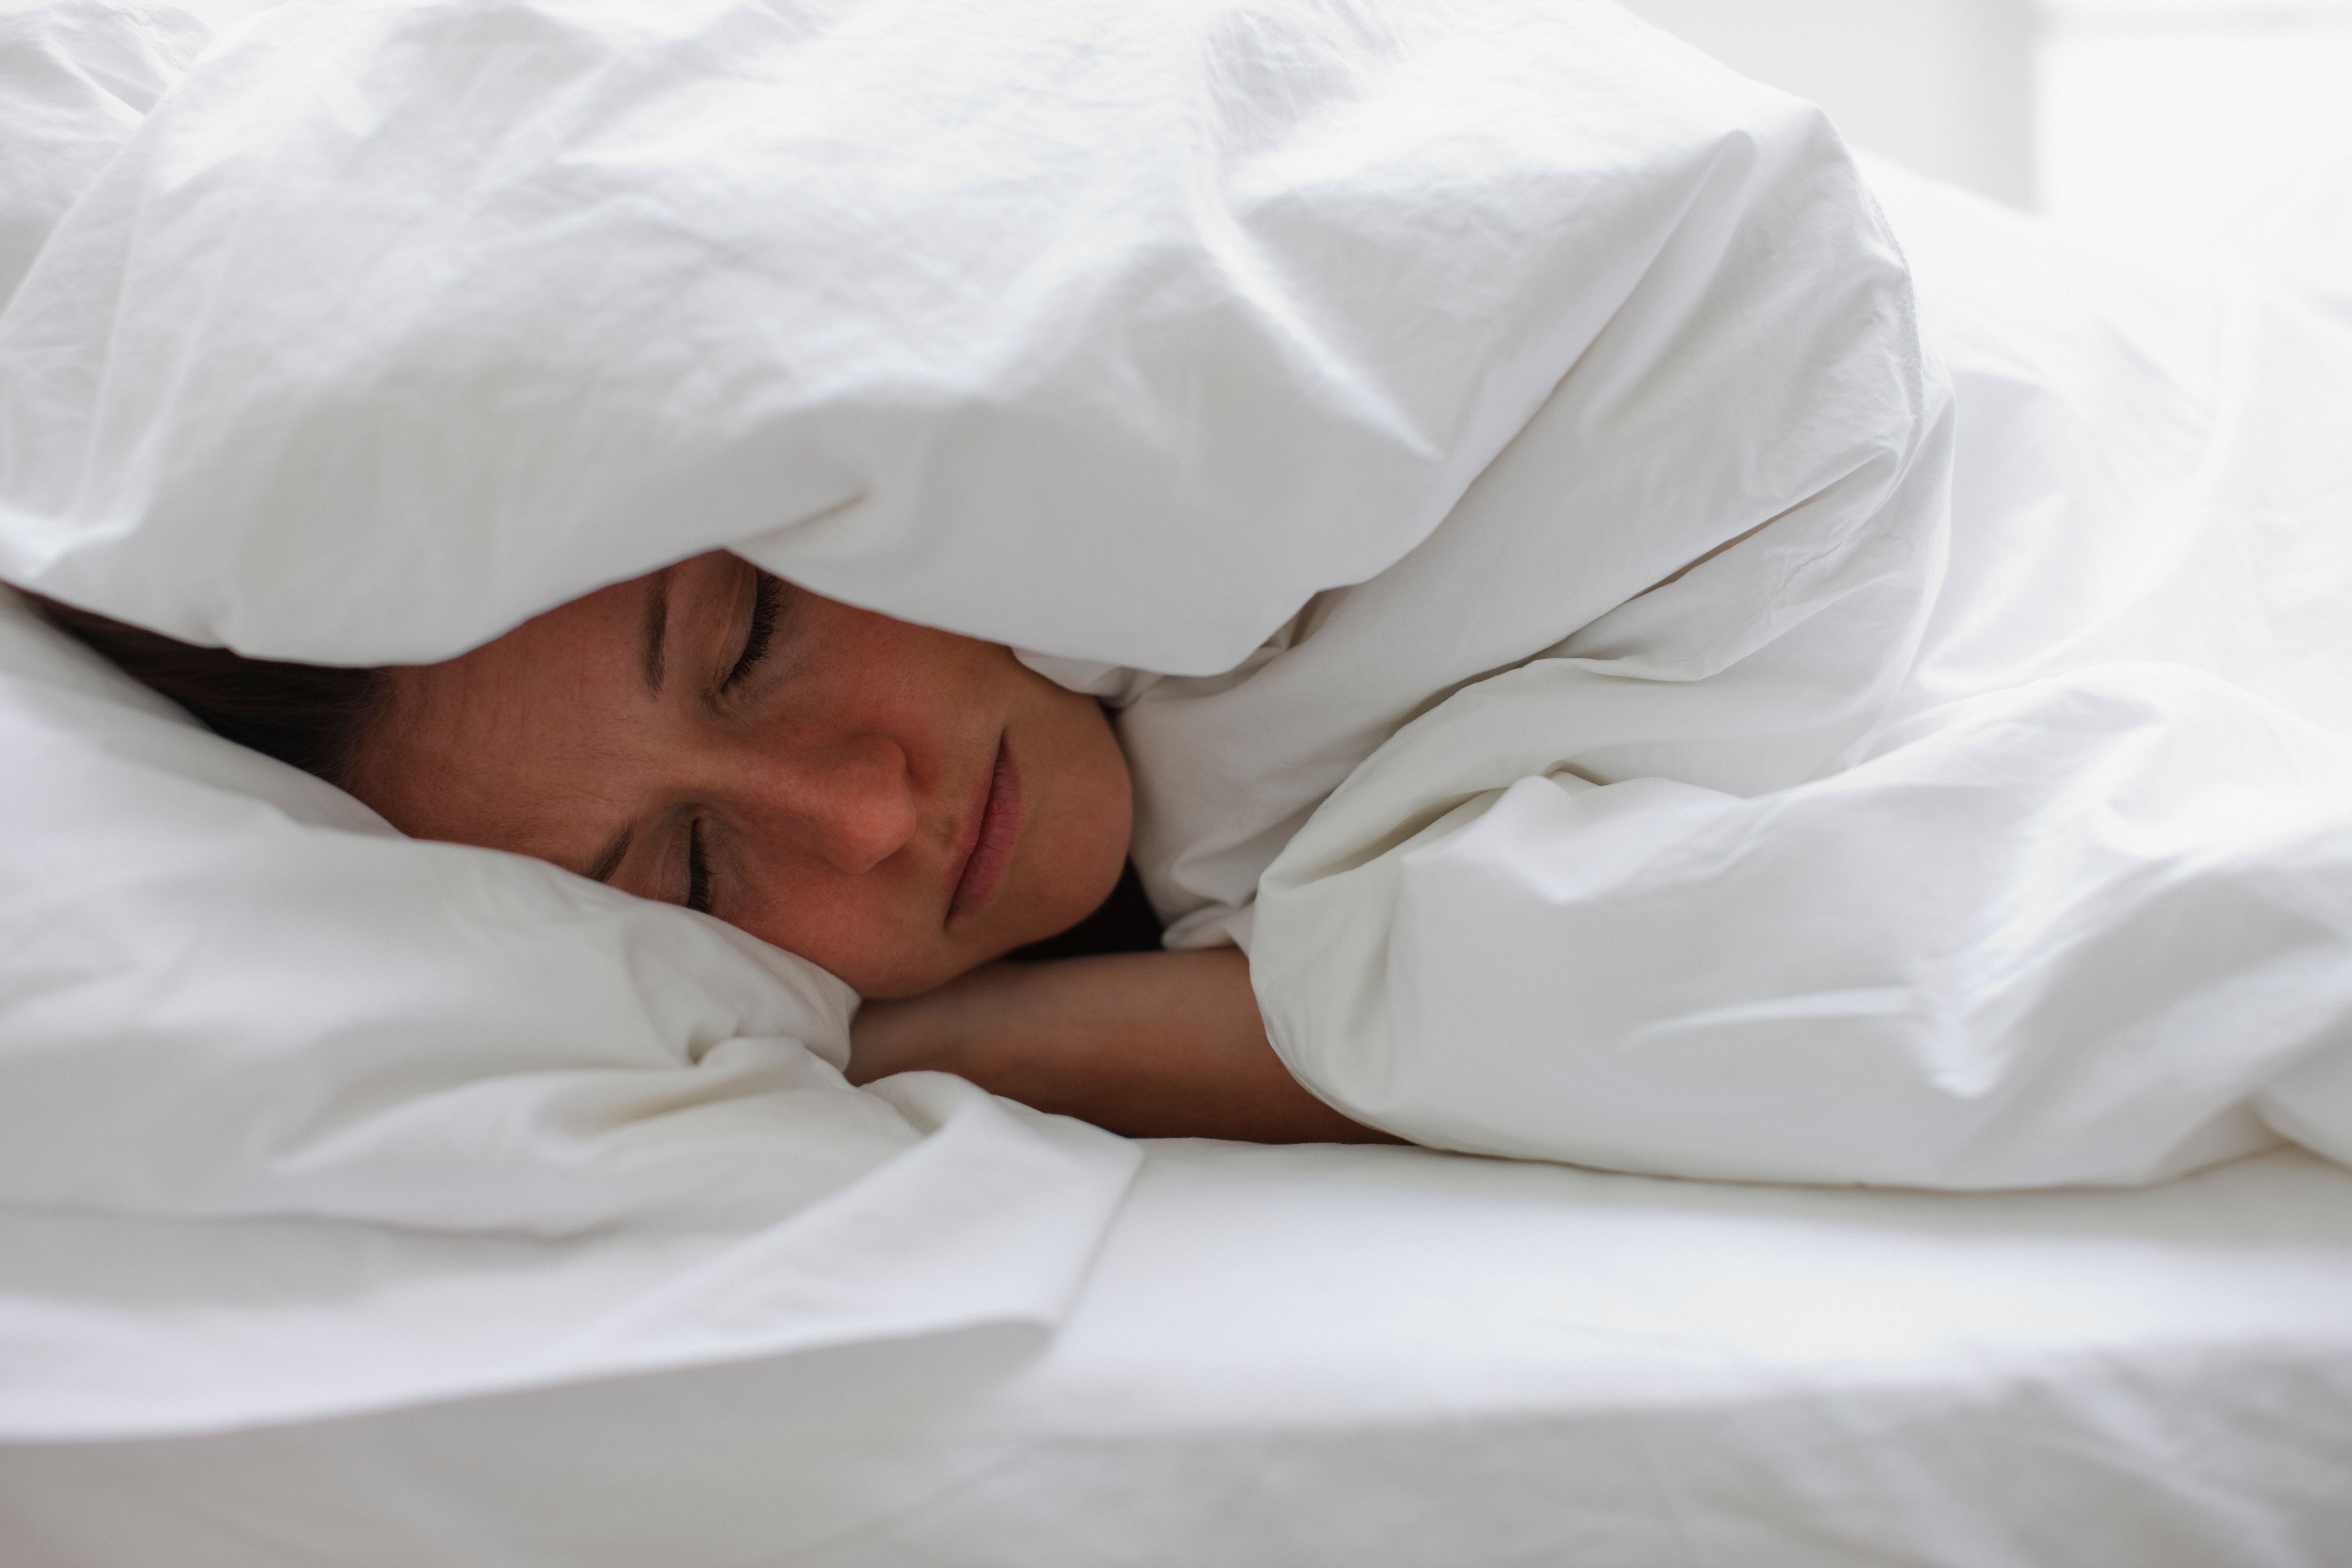 Полностью с спящими. Человек под одеялом. Человек лежит под одеялом. Человек в кровати под одеялом. Спящий человек под одеялом.